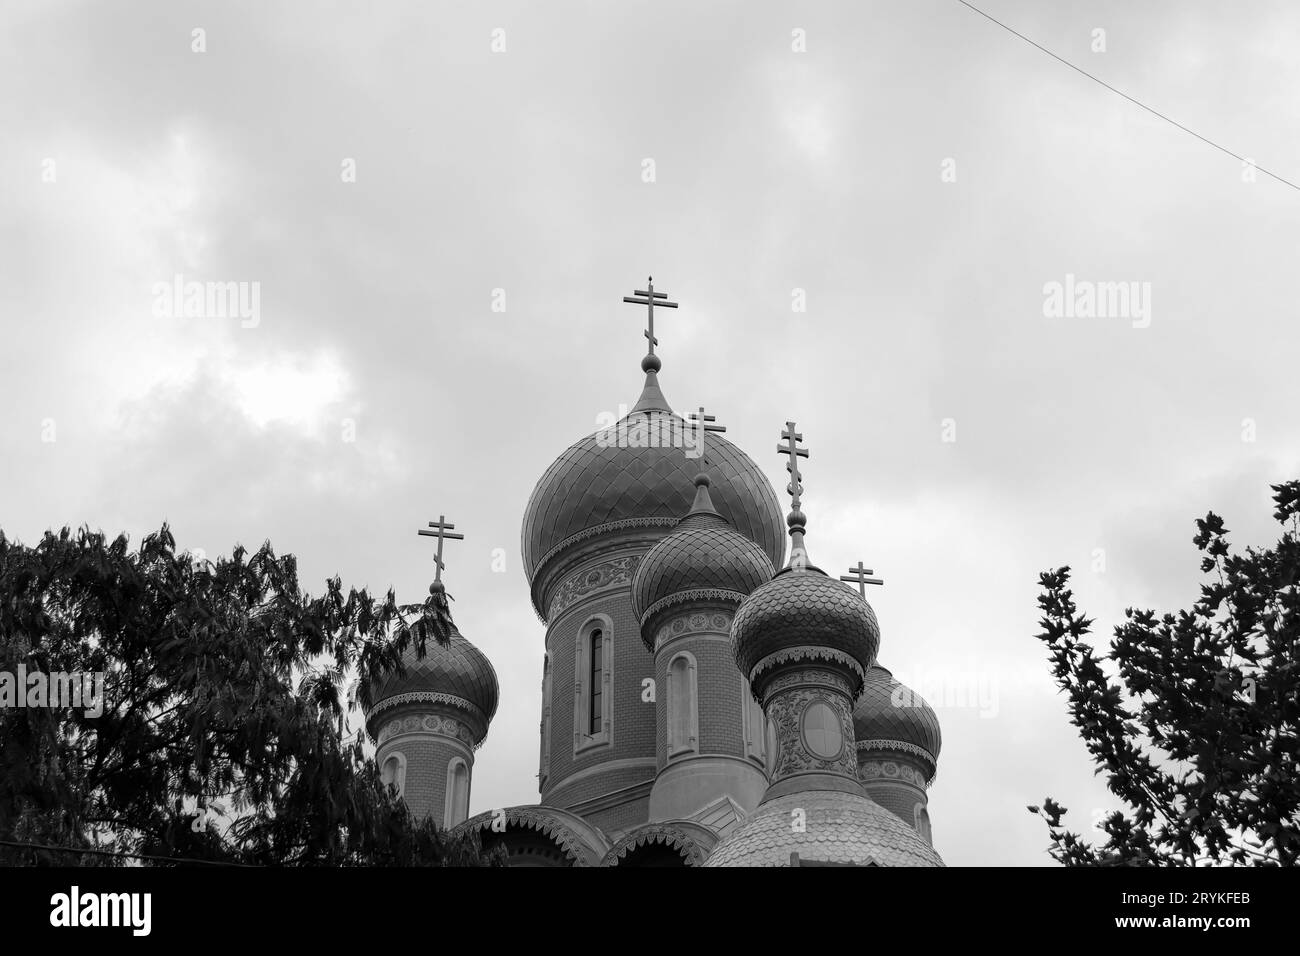 St. Nikolaus Russische Kirche in der Nähe des Universitätsplatzes in der Innenstadt von Bukarest Äußere der sieben Zwiebelkuppeln oben auf dem Gebäude in Schwarz-weiß Stockfoto